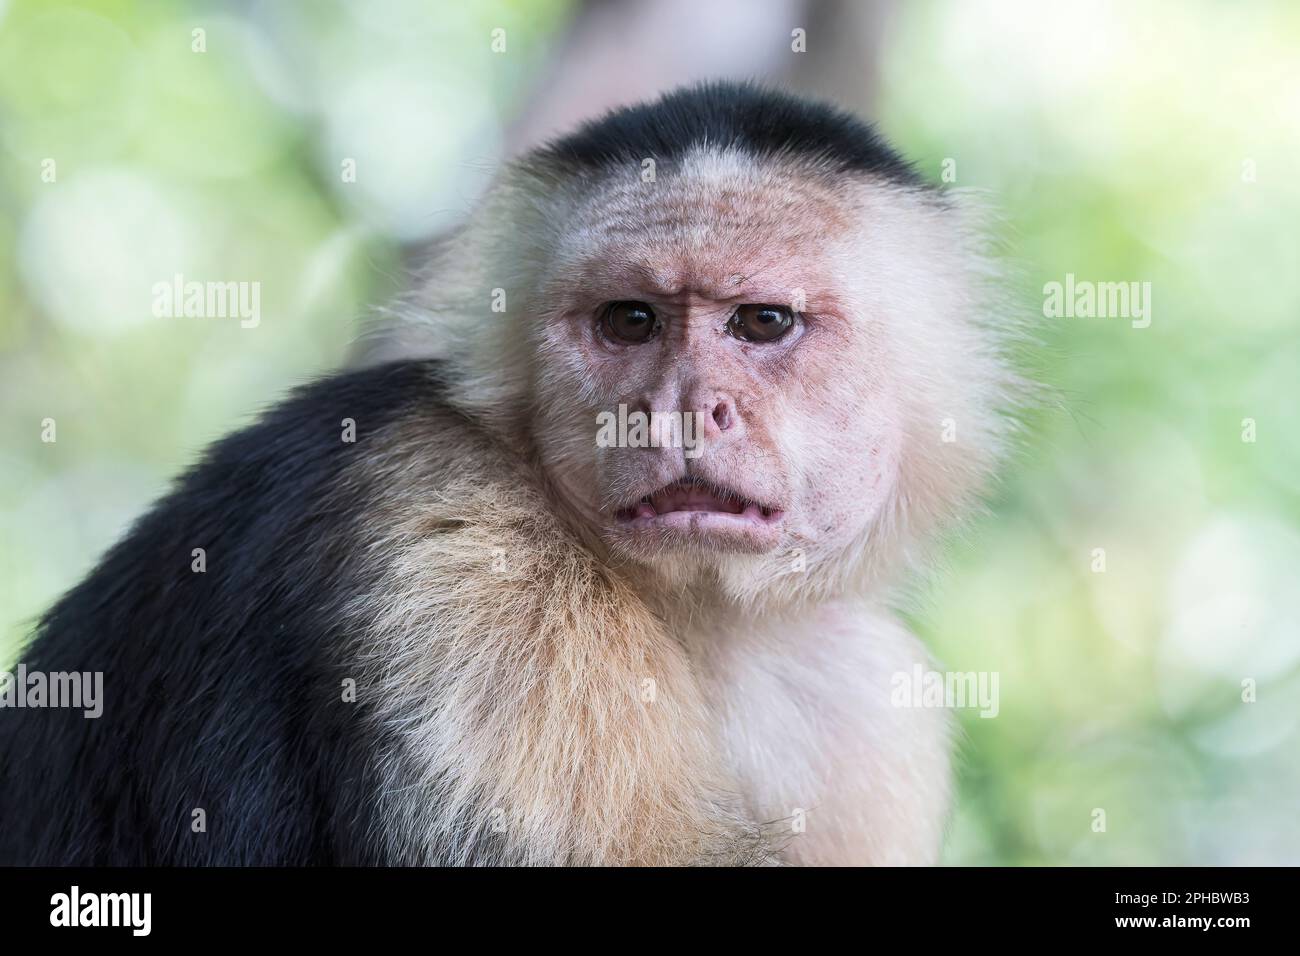 Singe capucin panaméen à face blanche, imitateur Cebus, gros plan du visage d'un adulte qui se repose dans un arbre en forêt, Panama Banque D'Images